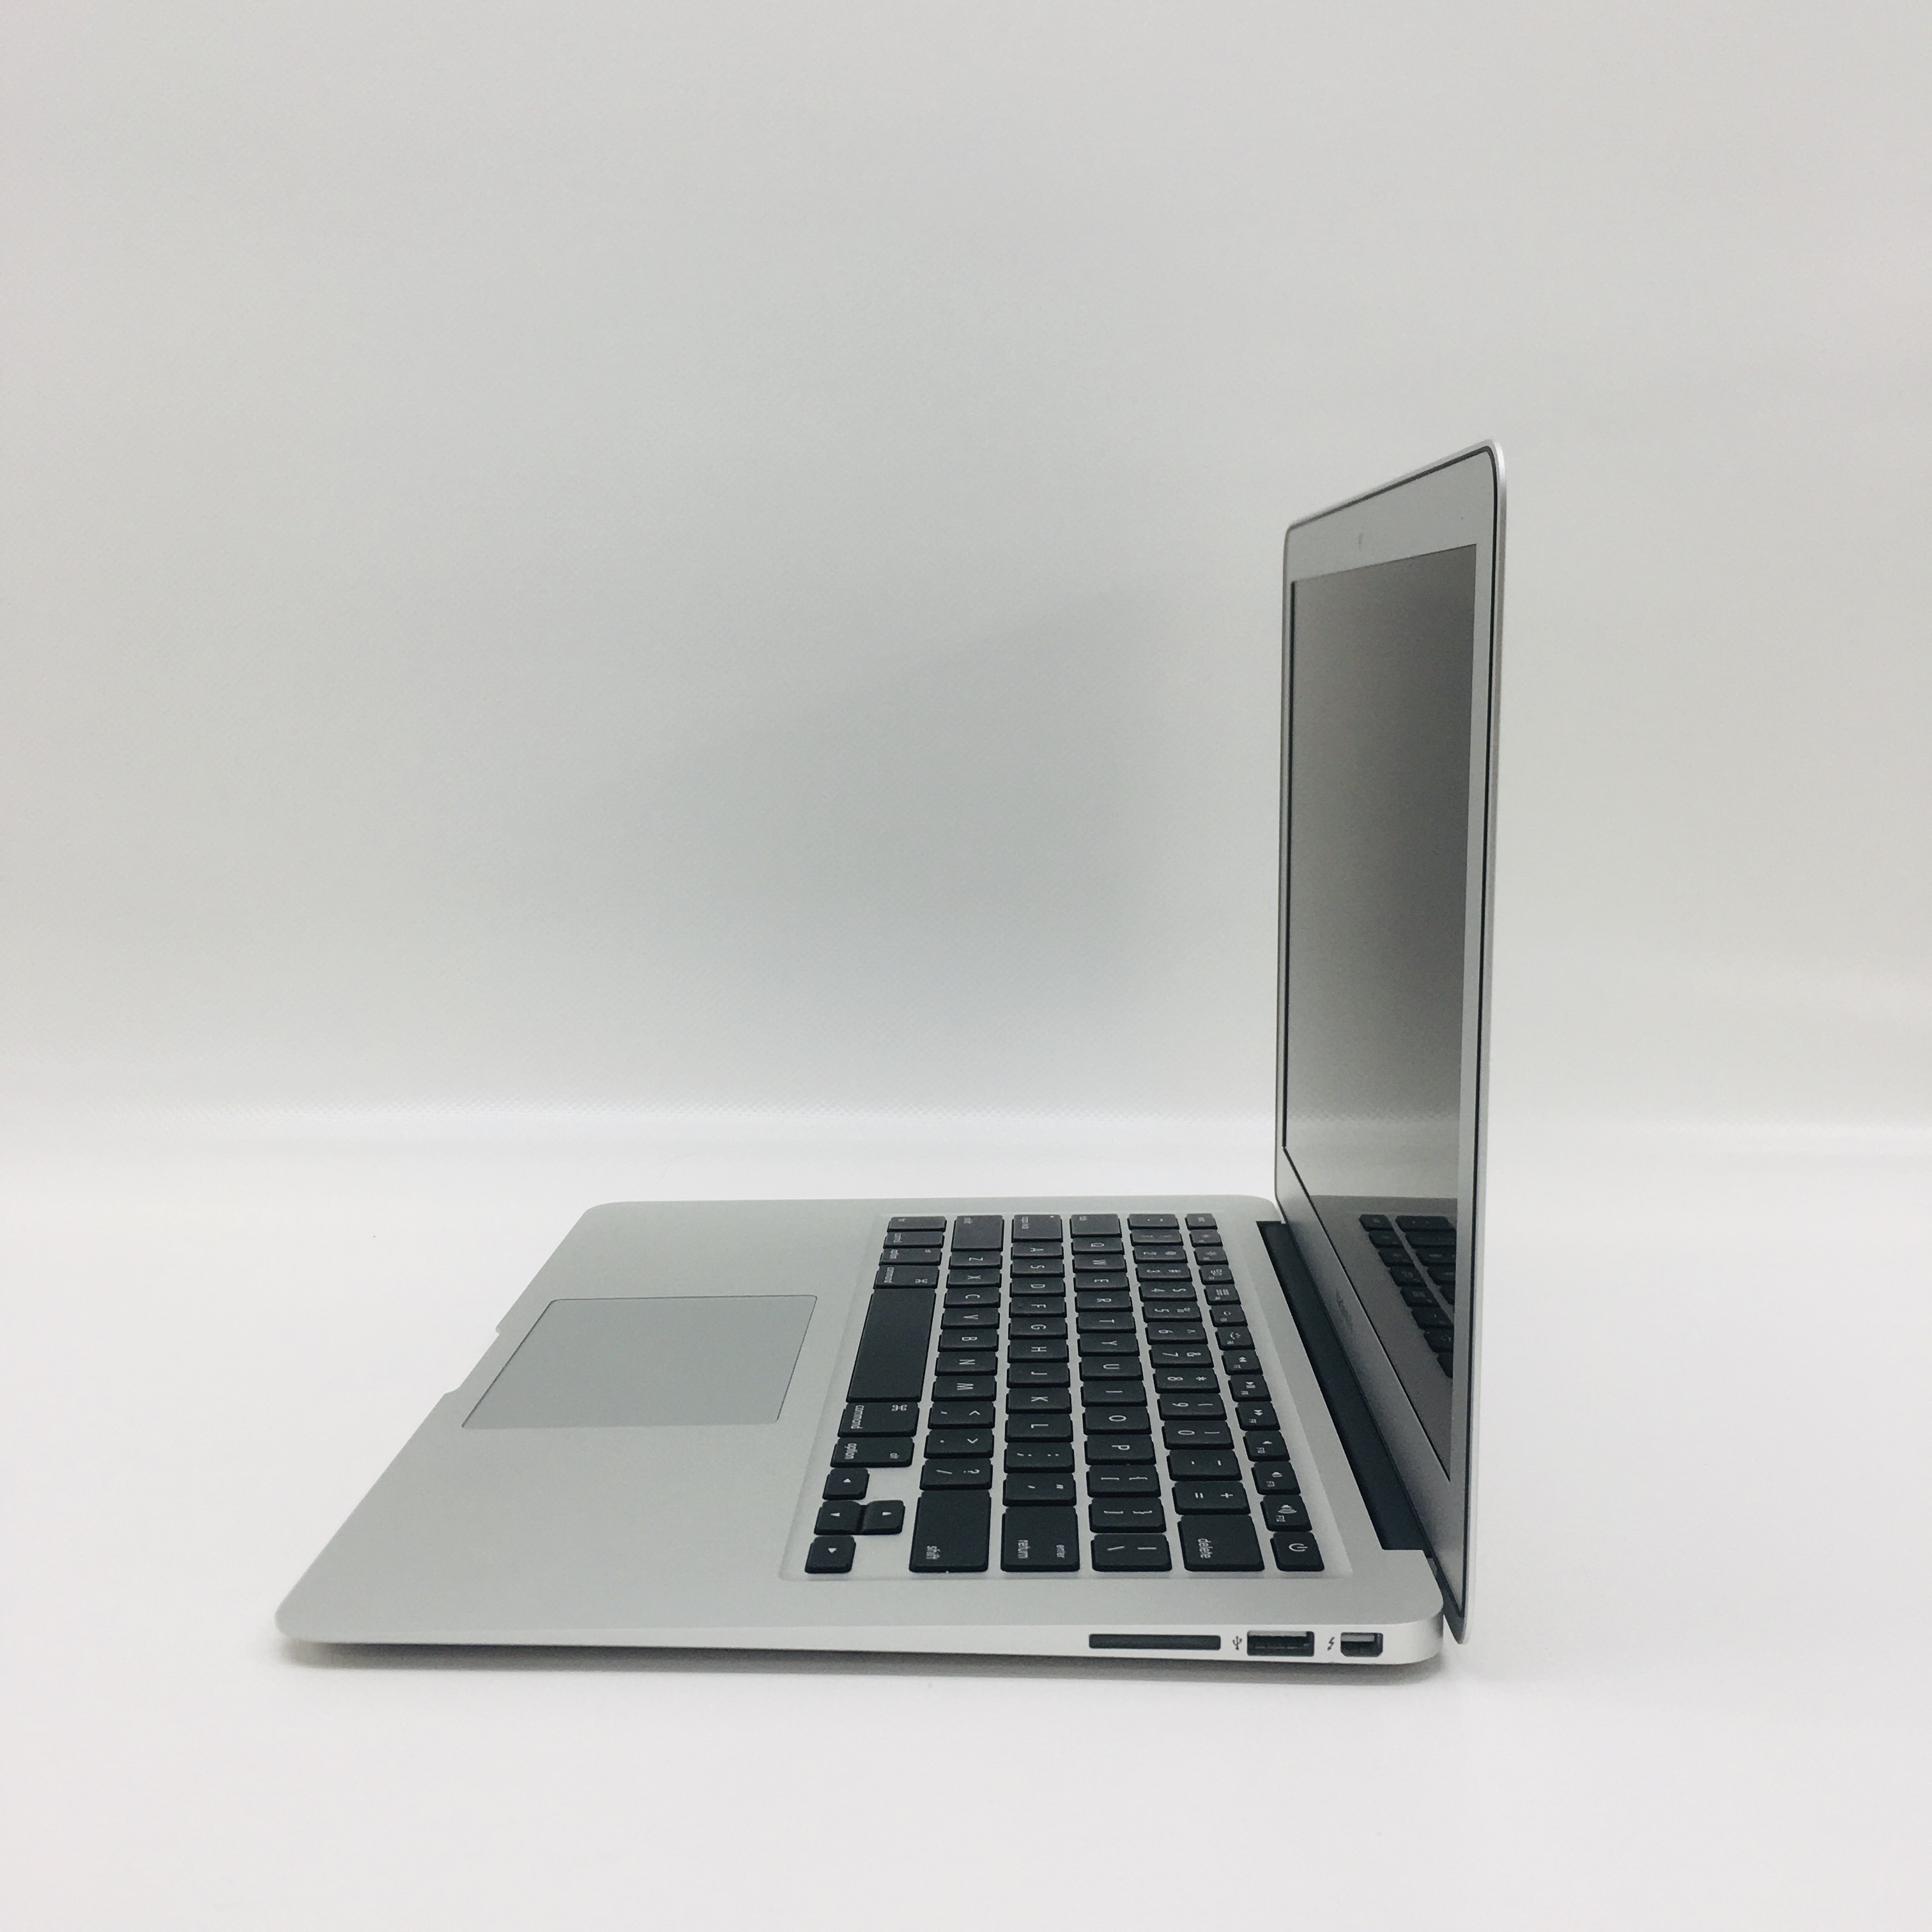 MacBook Air 13" Mid 2017 (Intel Core i5 1.8 GHz 8 GB RAM 512 GB SSD), Intel Core i5 1.8 GHz, 8 GB RAM, 512 GB SSD, image 3